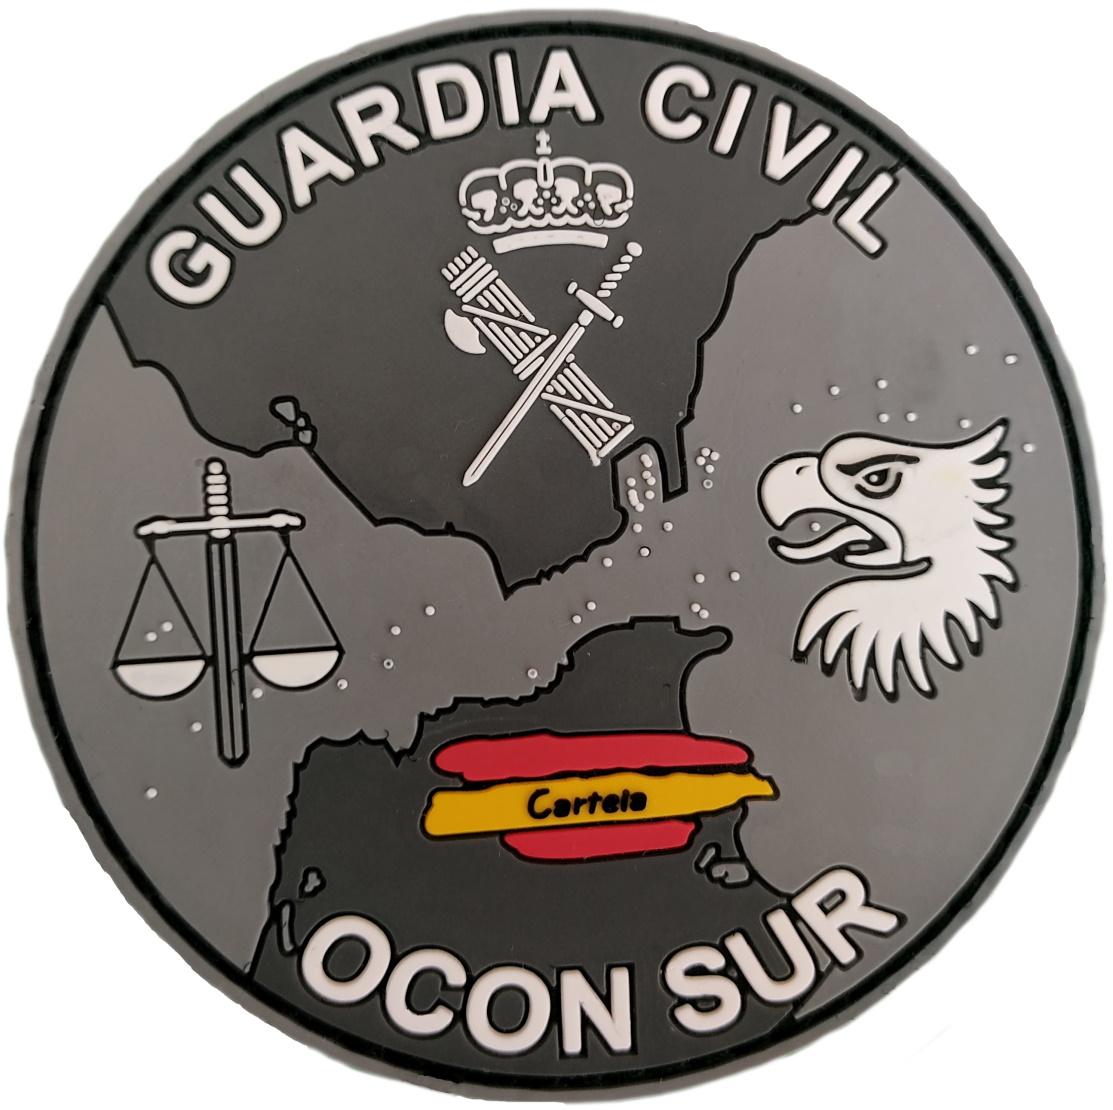 Guardia Civil Ocon sur Organización de coordinación anti drogas parche insignia emblema distintivo gris